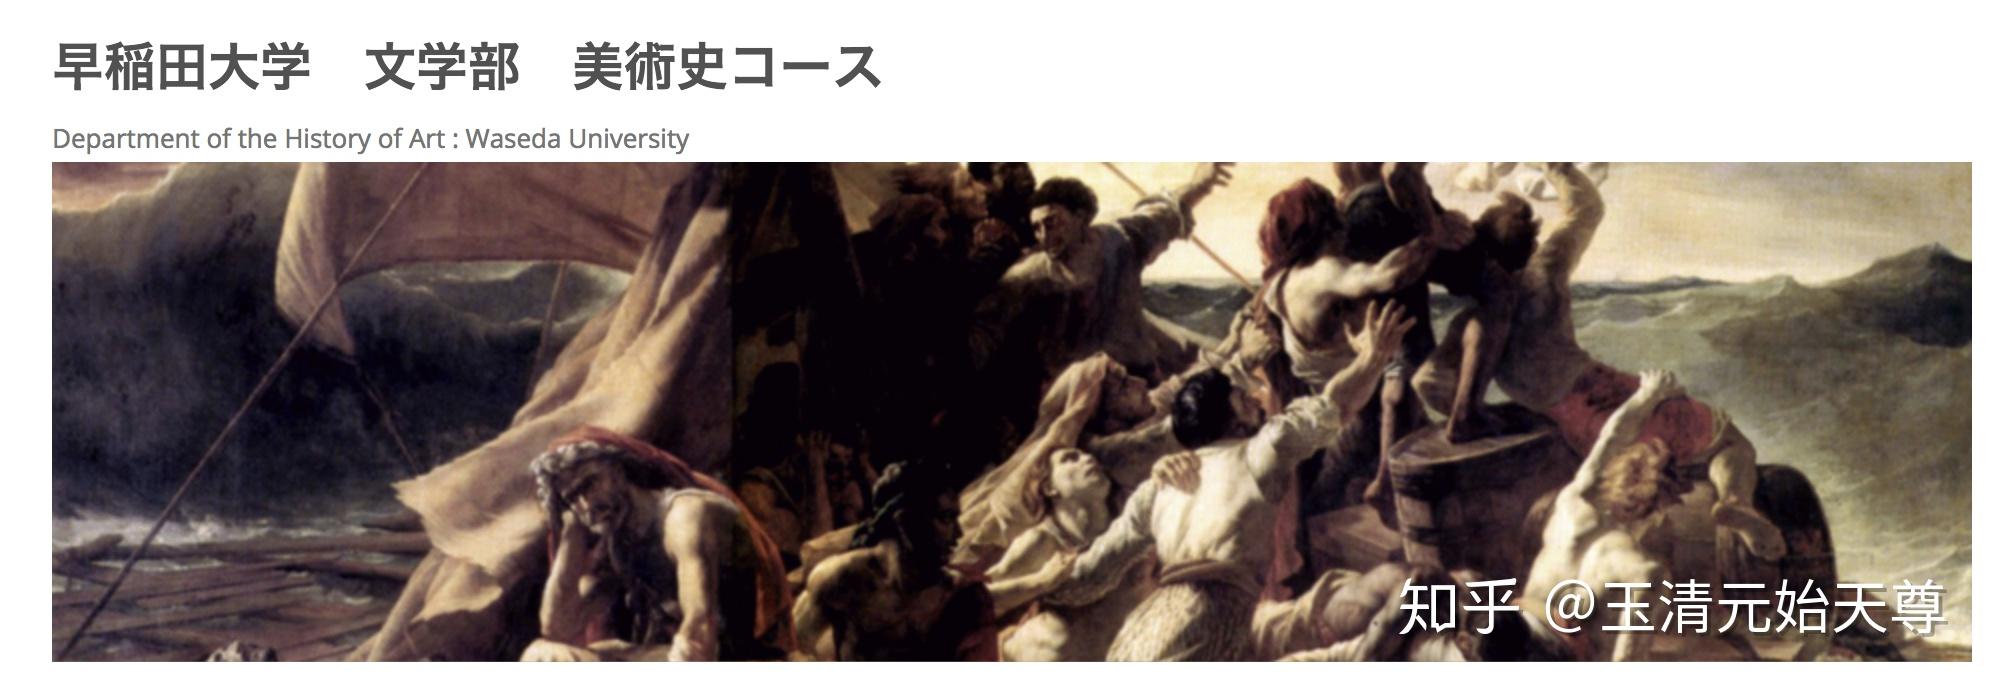 考日本的大学本科艺术史专业入学考要求是什么